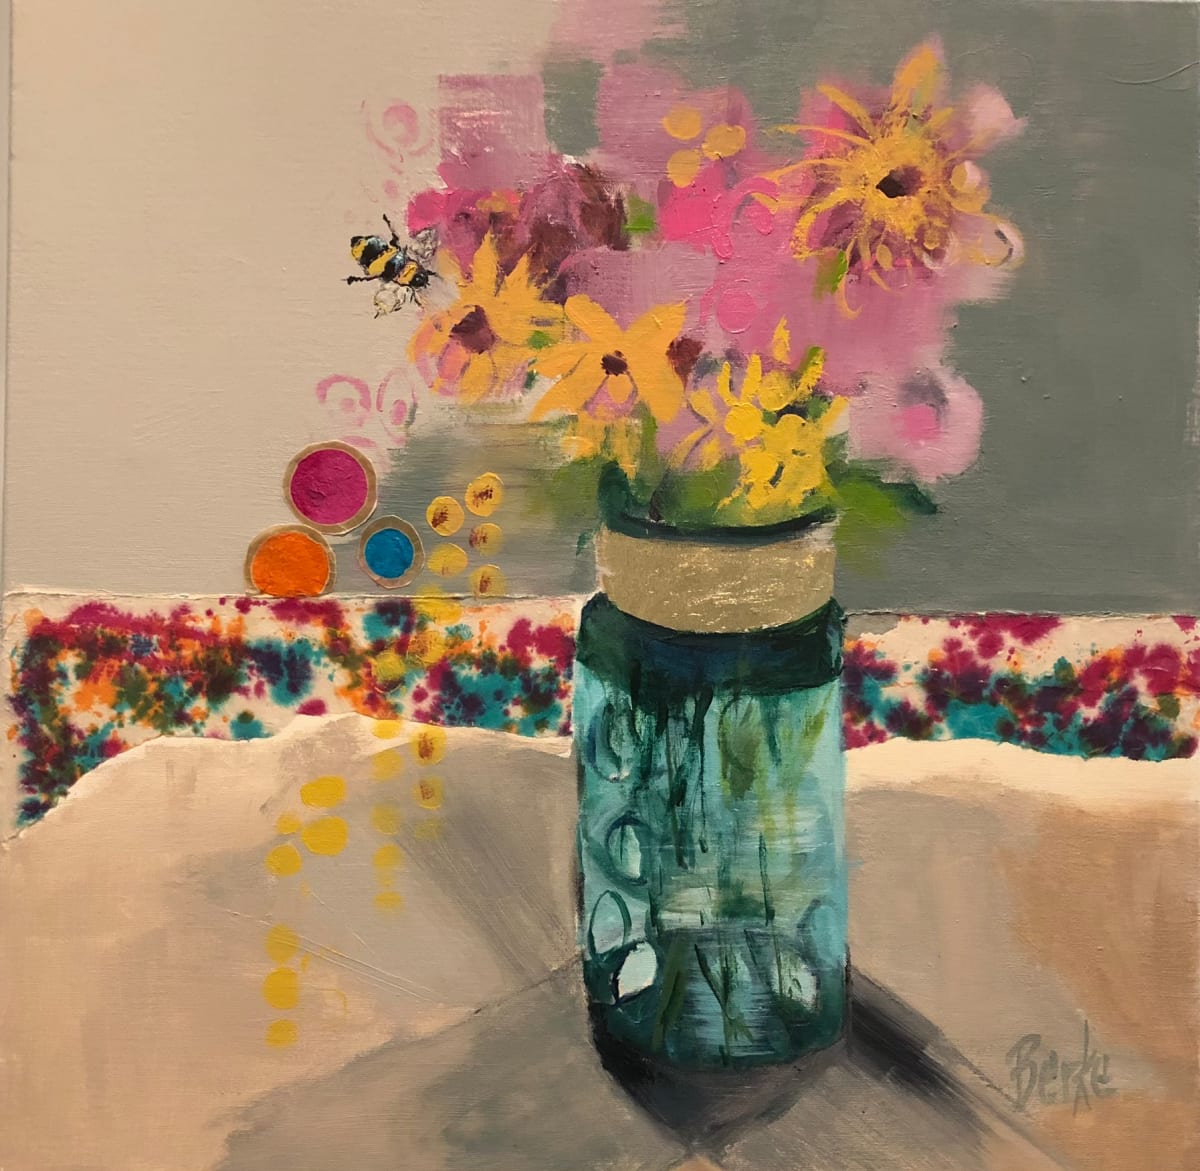 From a Friend by jane berke  Image: Flower bouquet in glass vase